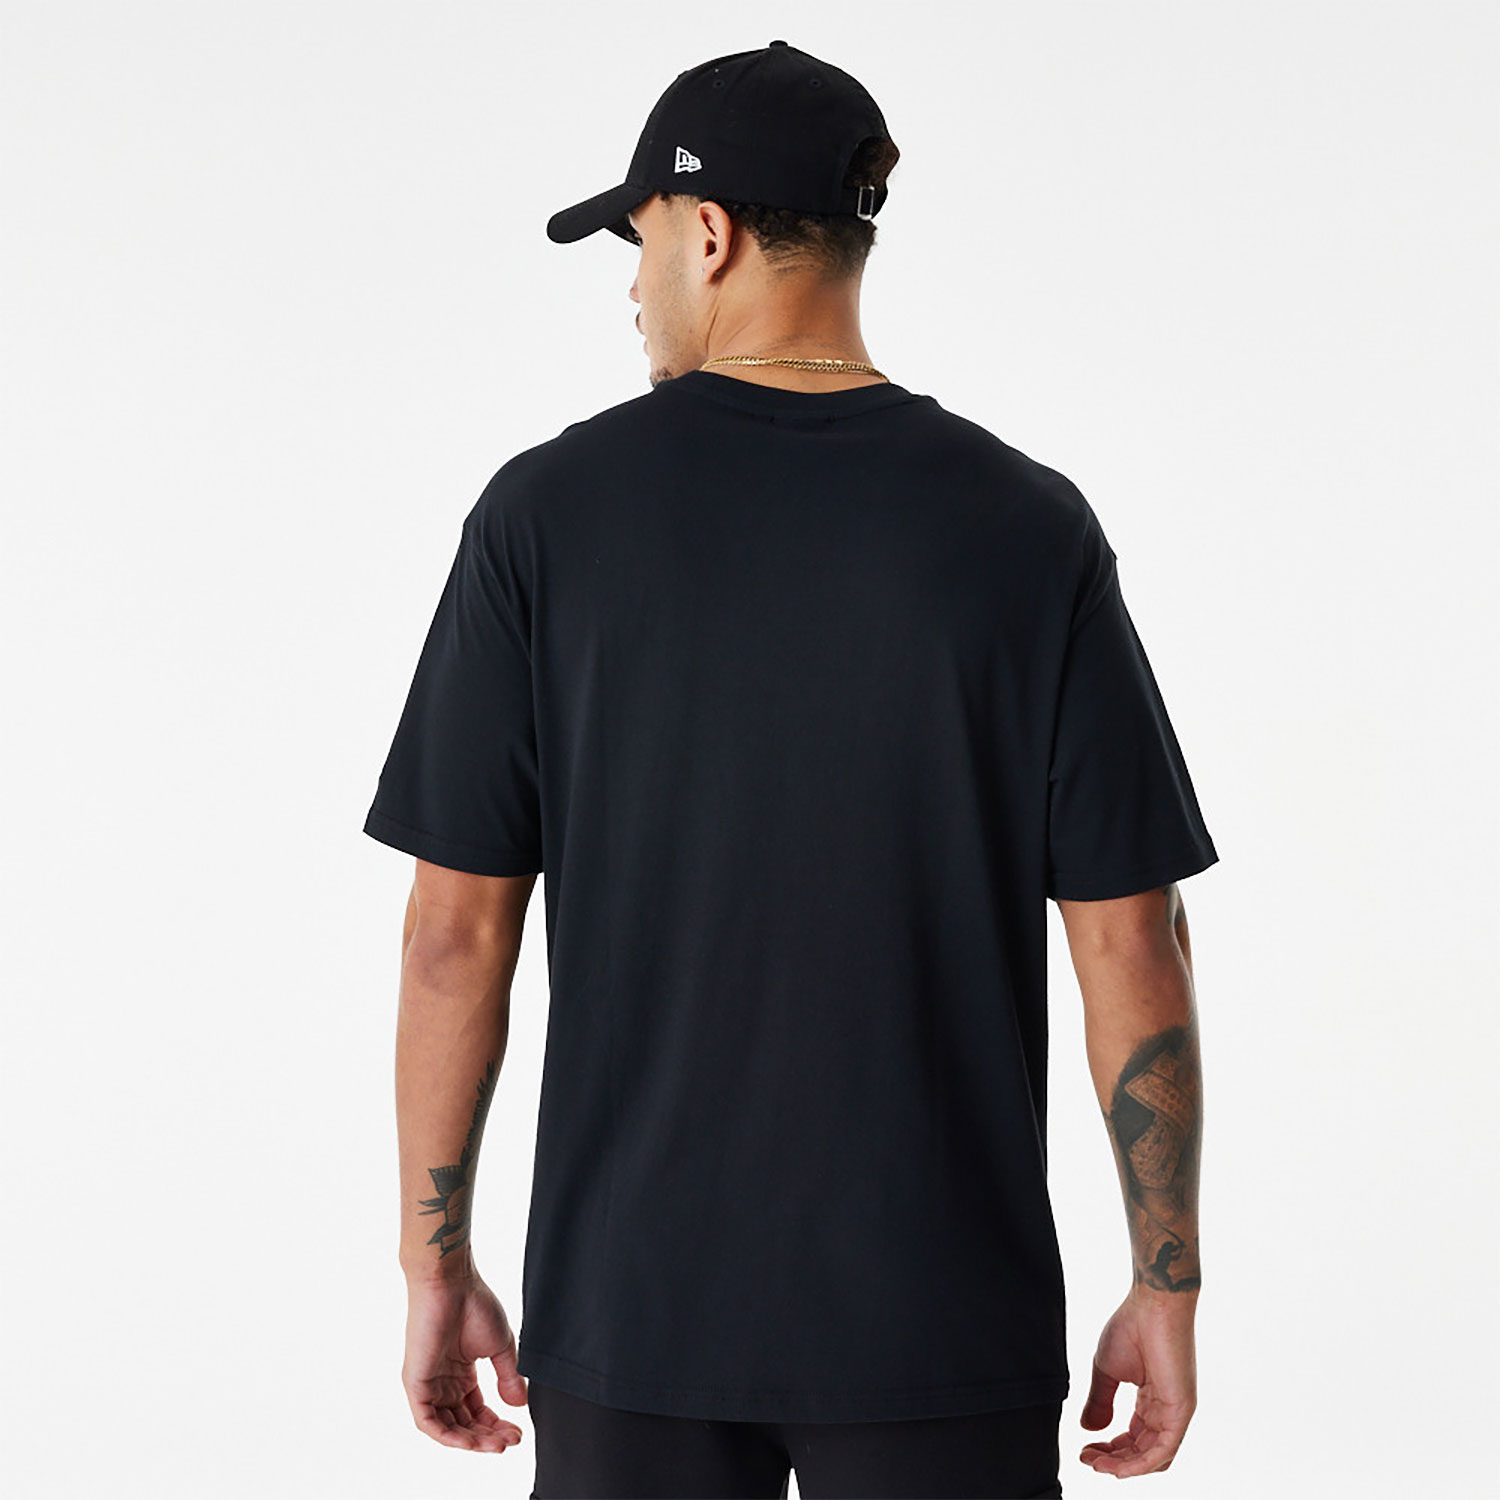 LA Lakers NBA Retro Graphic Black Oversized T-Shirt